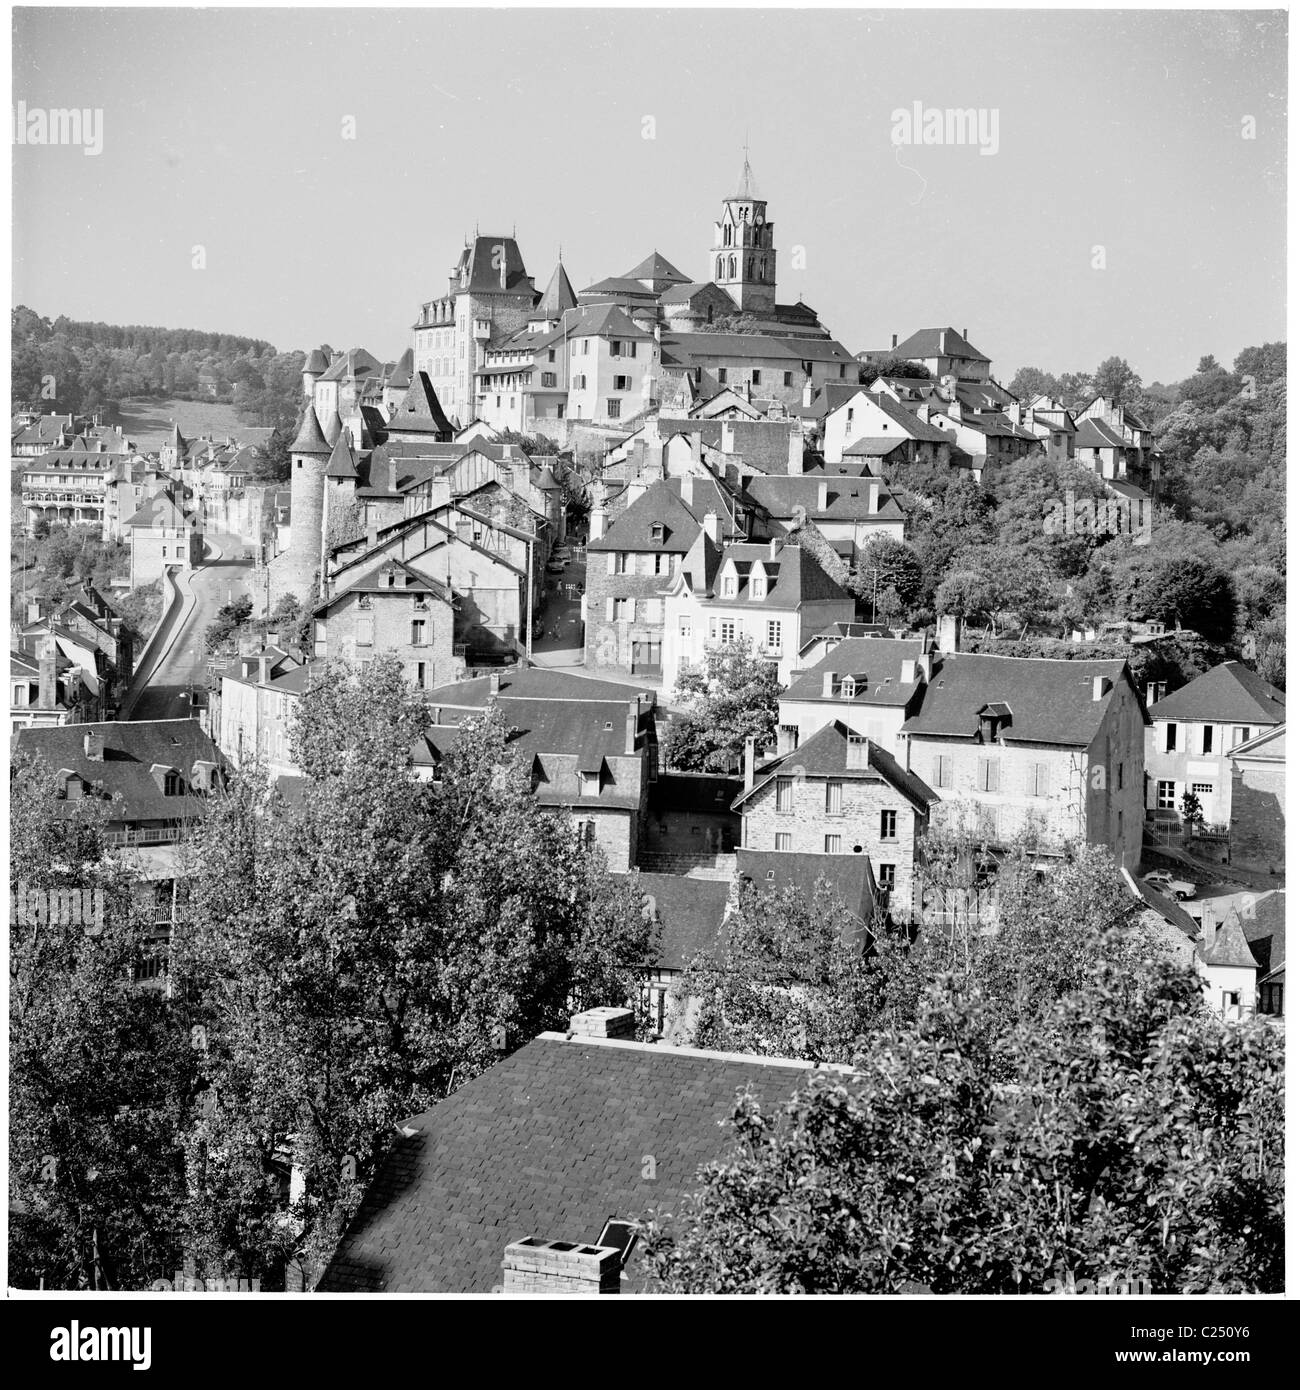 1950s, historique, vue sur les anciens bâtiments et toits d'Uzerche, France. La ville médiévale est connue sous le nom de « perle du Limousin ». Banque D'Images